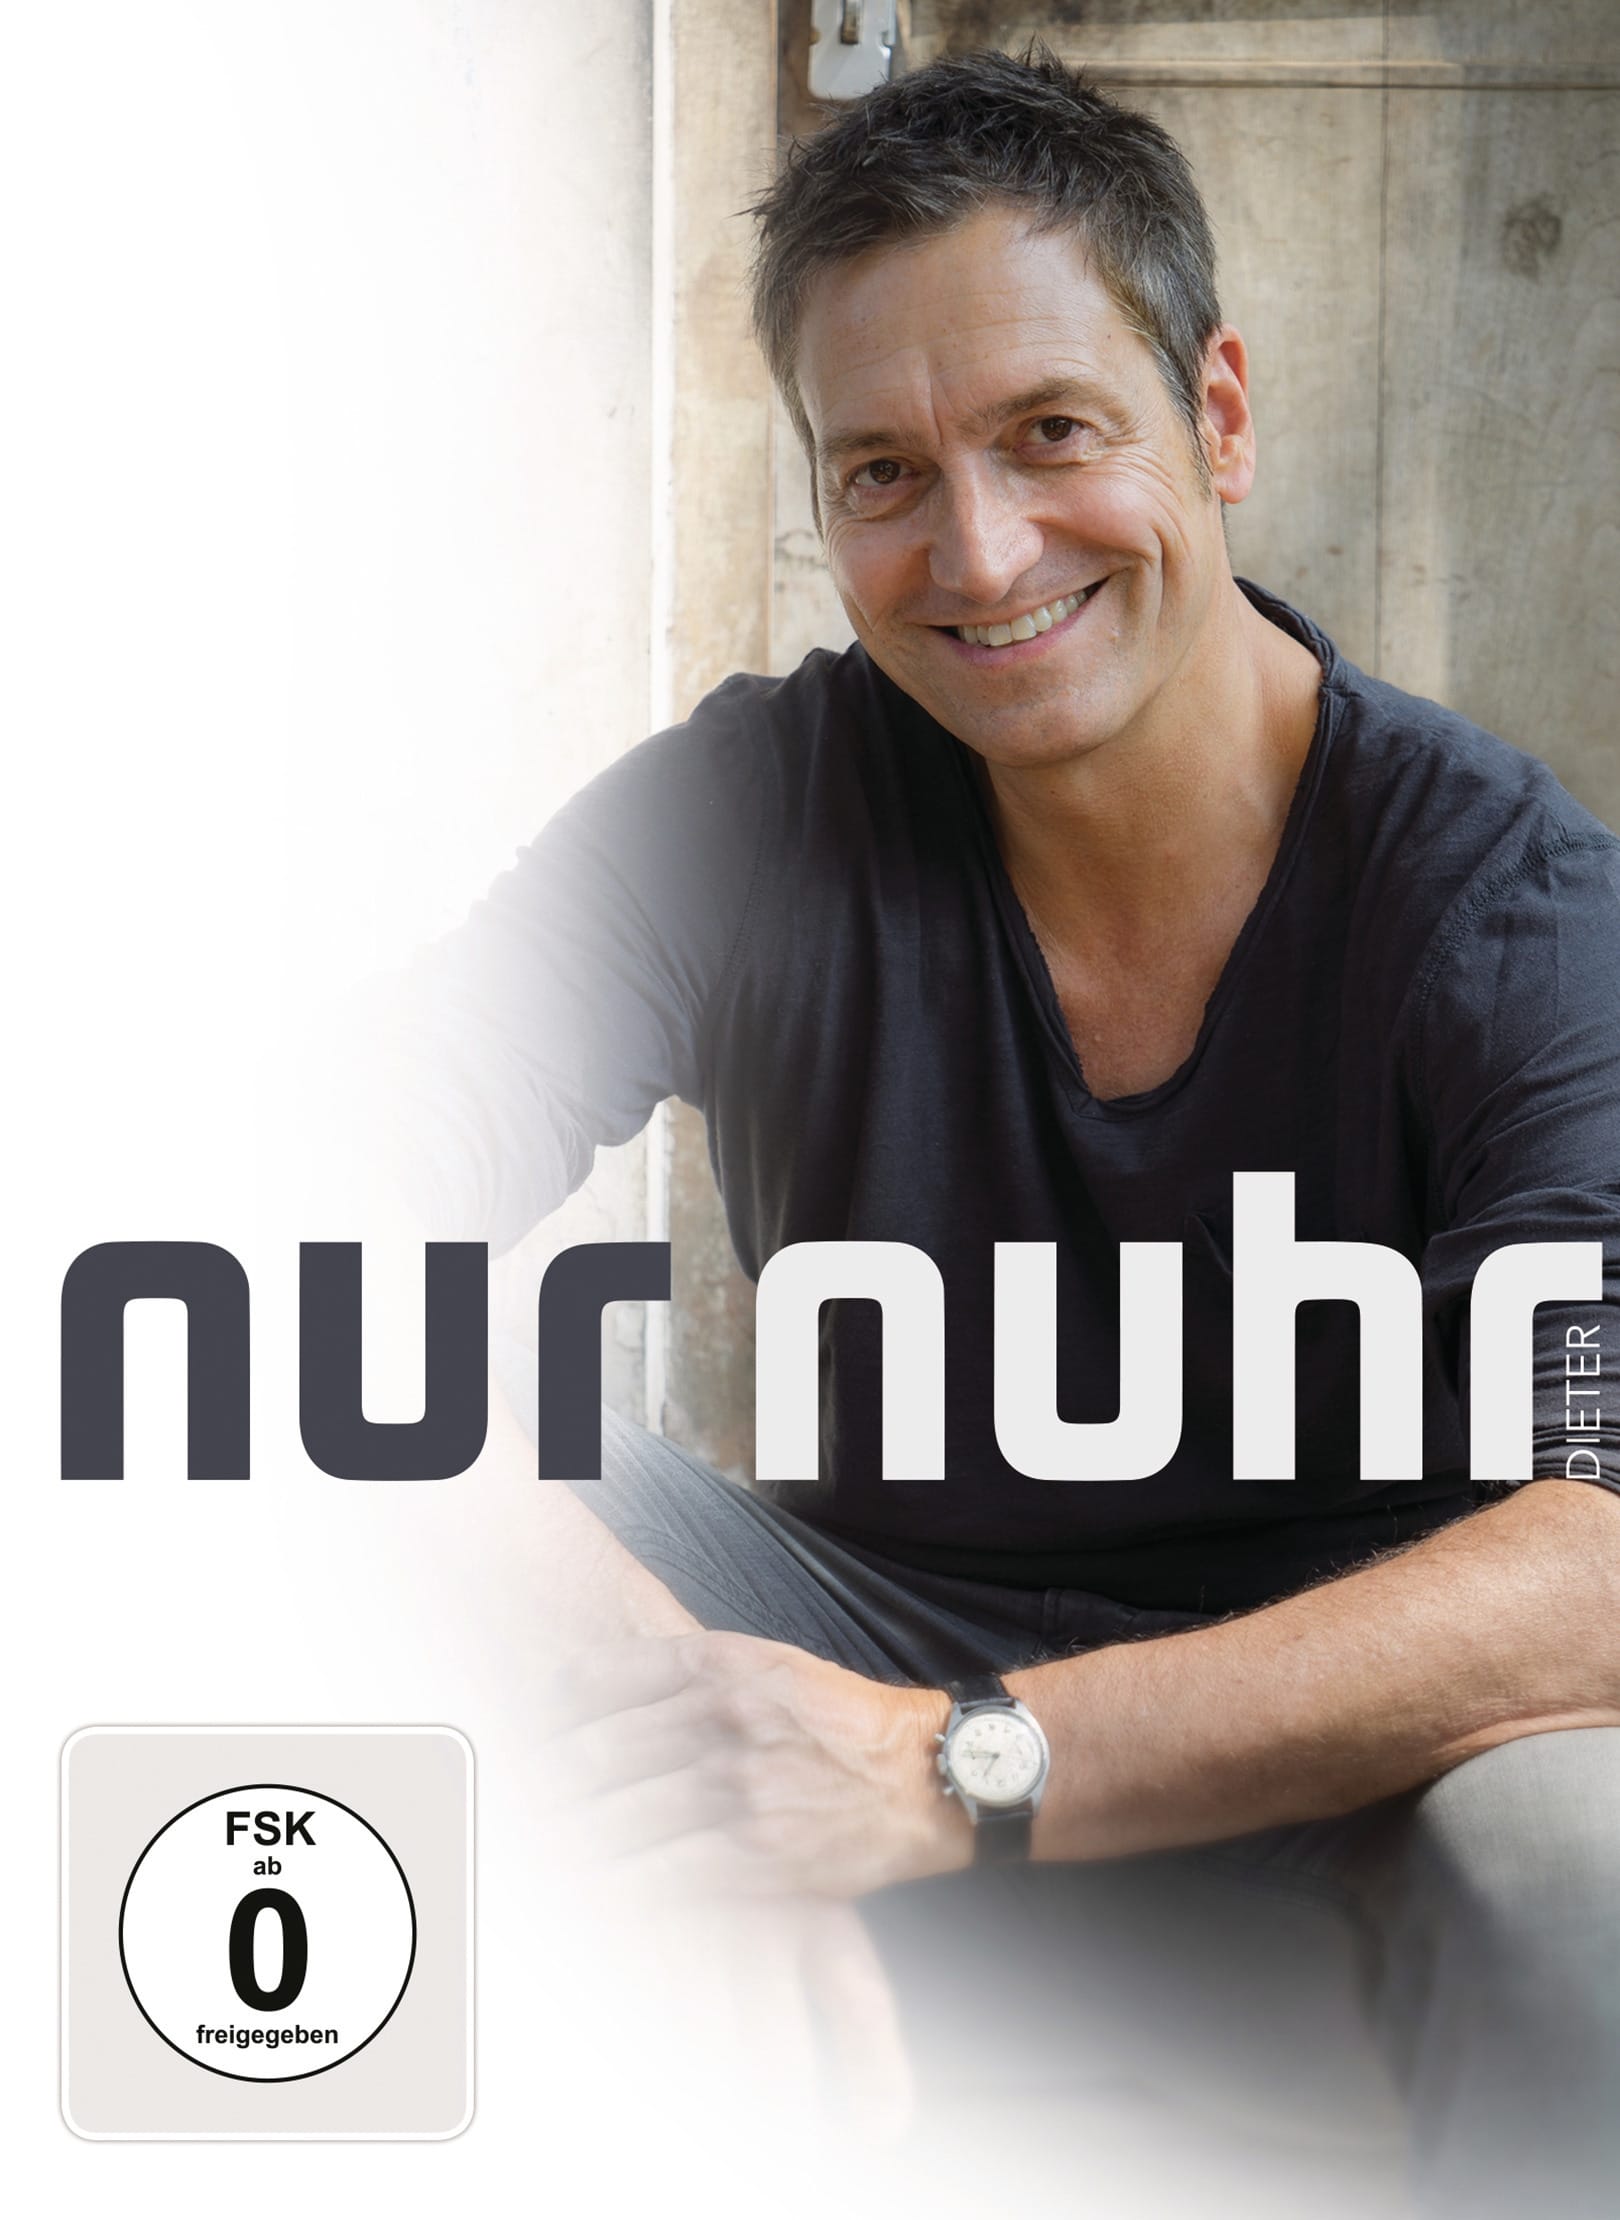 Dieter Nuhr live! - Nur Nuhr